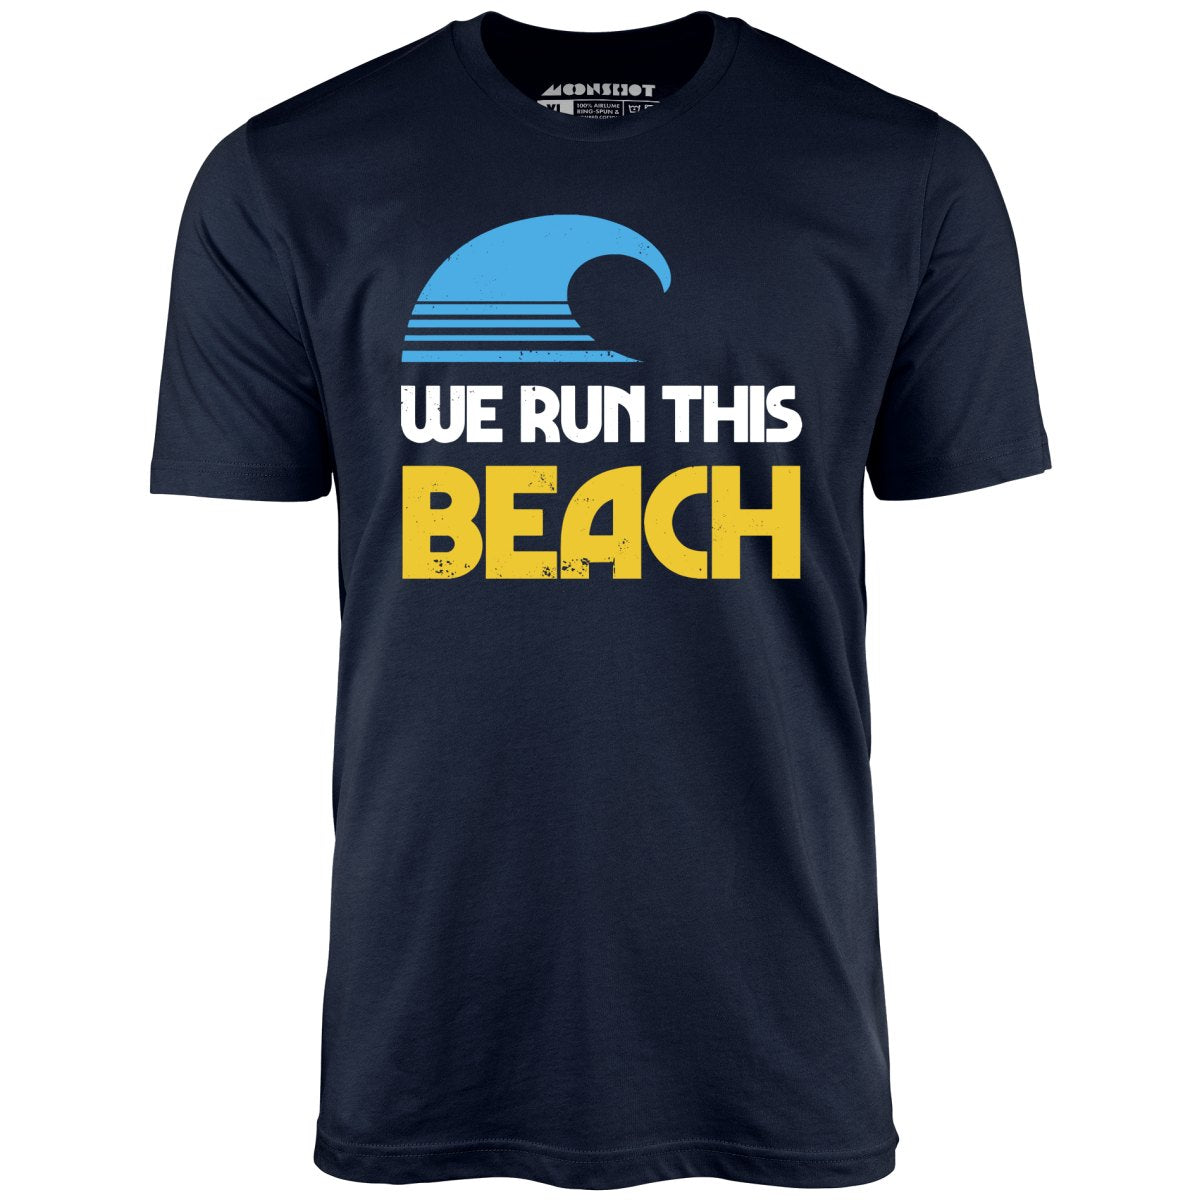 We Run This Beach - Unisex T-Shirt